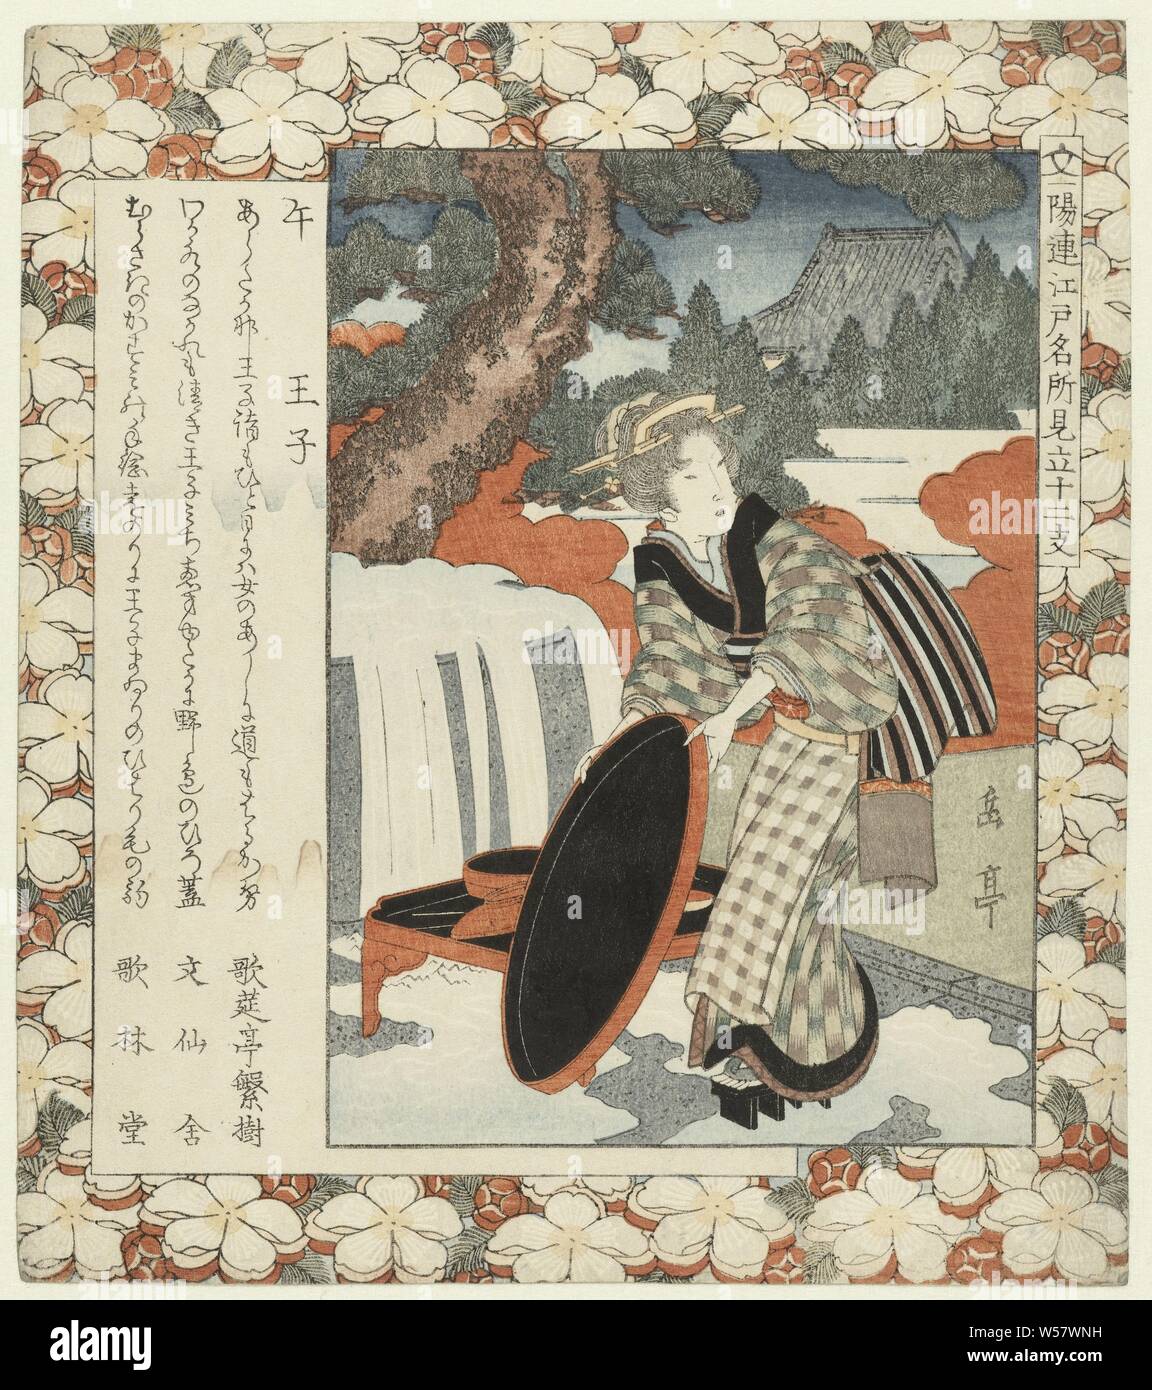 Cheval : Ôji (Uma-Oji titre sur l'objet) des lieux célèbres d'Edo et les douze signes du zodiaque (titre de la série) Edo meisho mitate jûnishi (titre de la série sur l'objet), fille d'un grand bac de lavage verni à un bassin d'eau. Signe de cheval et Ôji (banlieue d'Edo). Avec trois poèmes, les plantes, la végétation (fleurs, fleurs, fleurs), Yashima Gakutei (mentionné sur l'objet), le Japon, l'c. 1827, gravure sur bois, papier couleur, h 211 mm × W 186 mm Banque D'Images